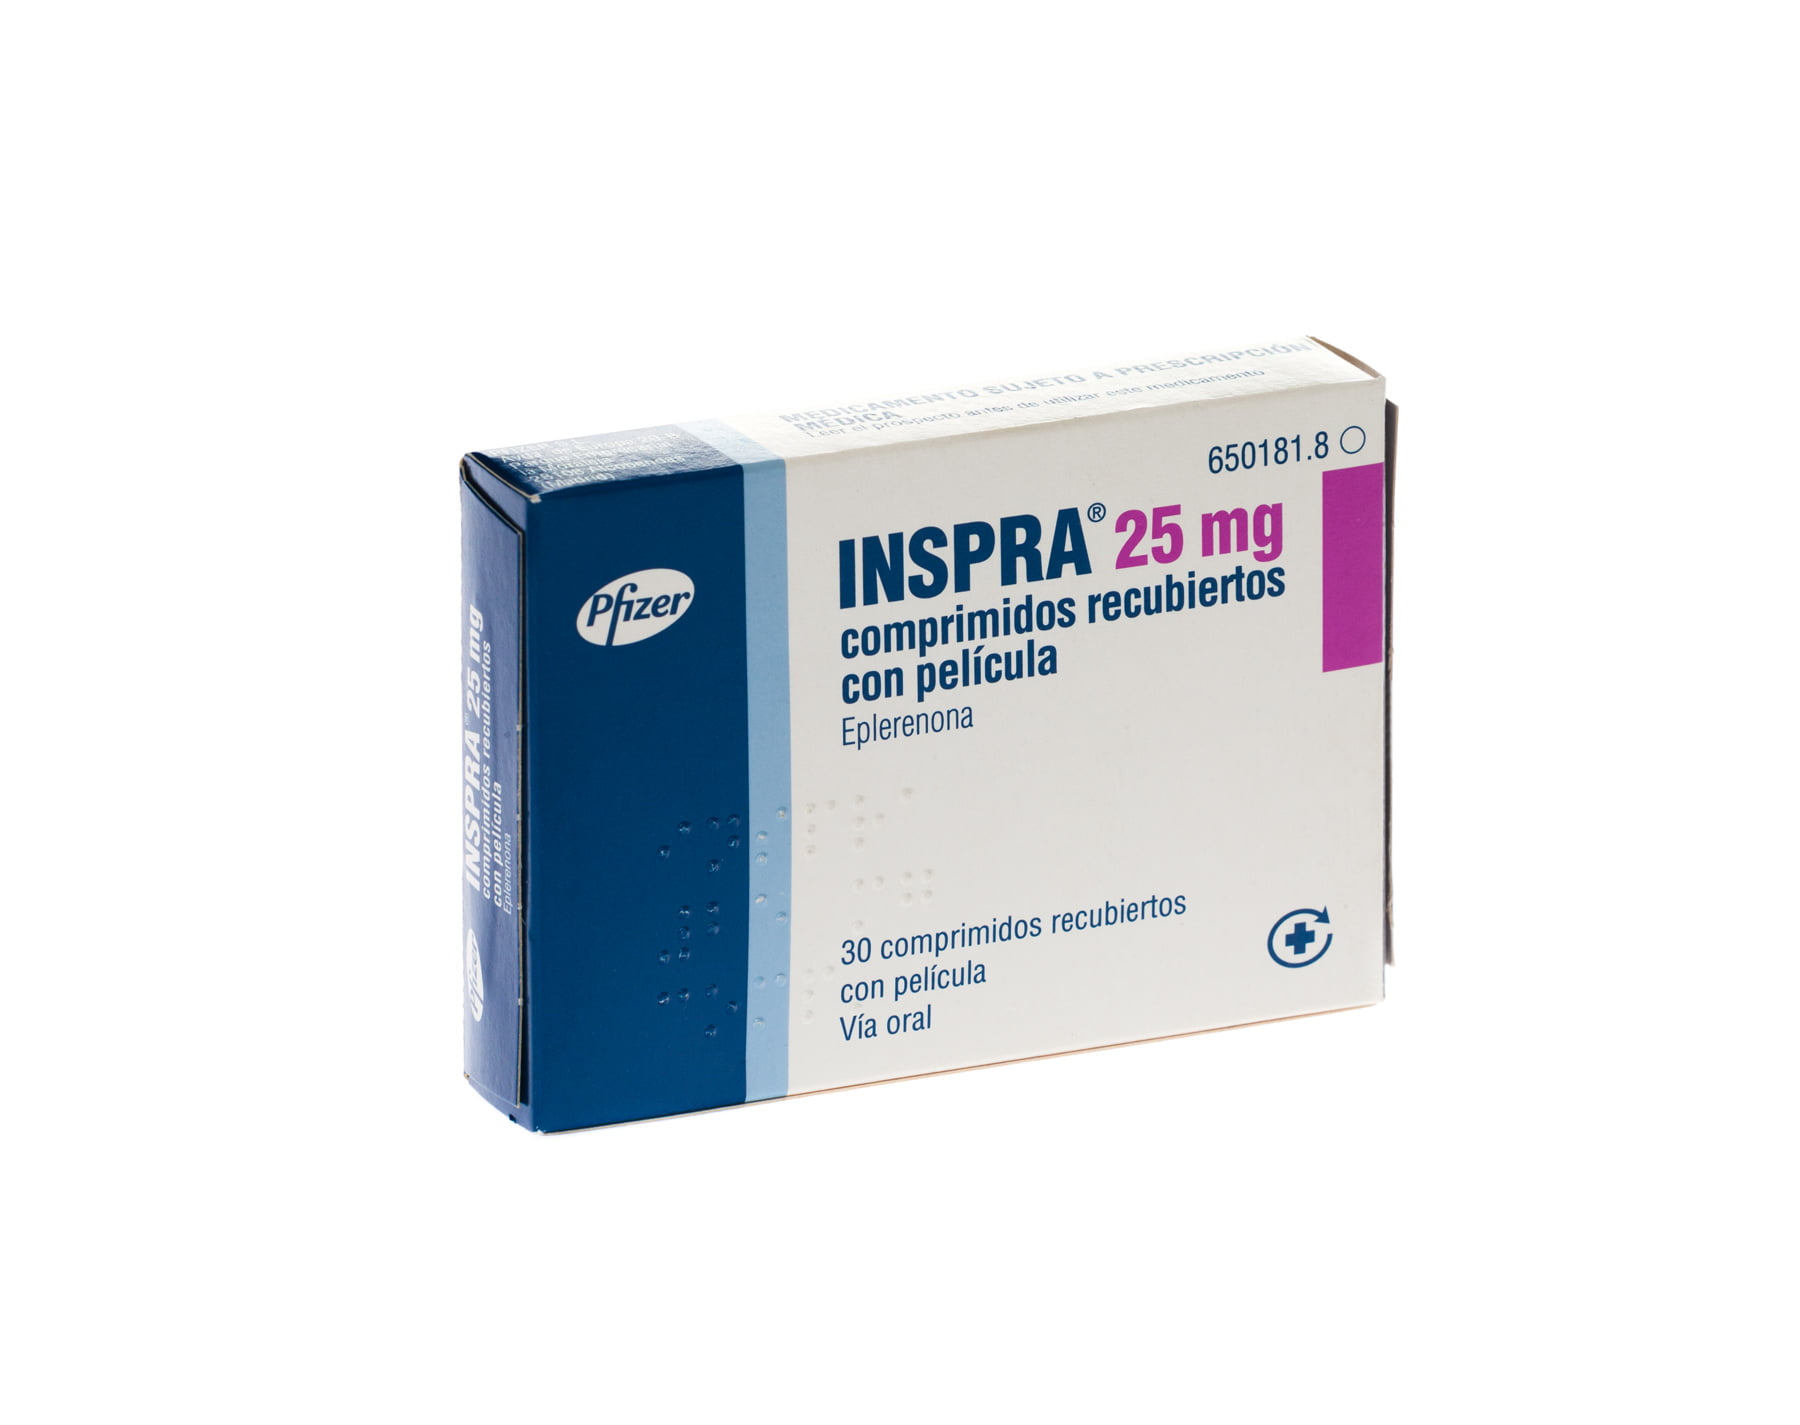 أقراص أنسبرا inspra دواعي الاستخدام والأعراض الجانبية